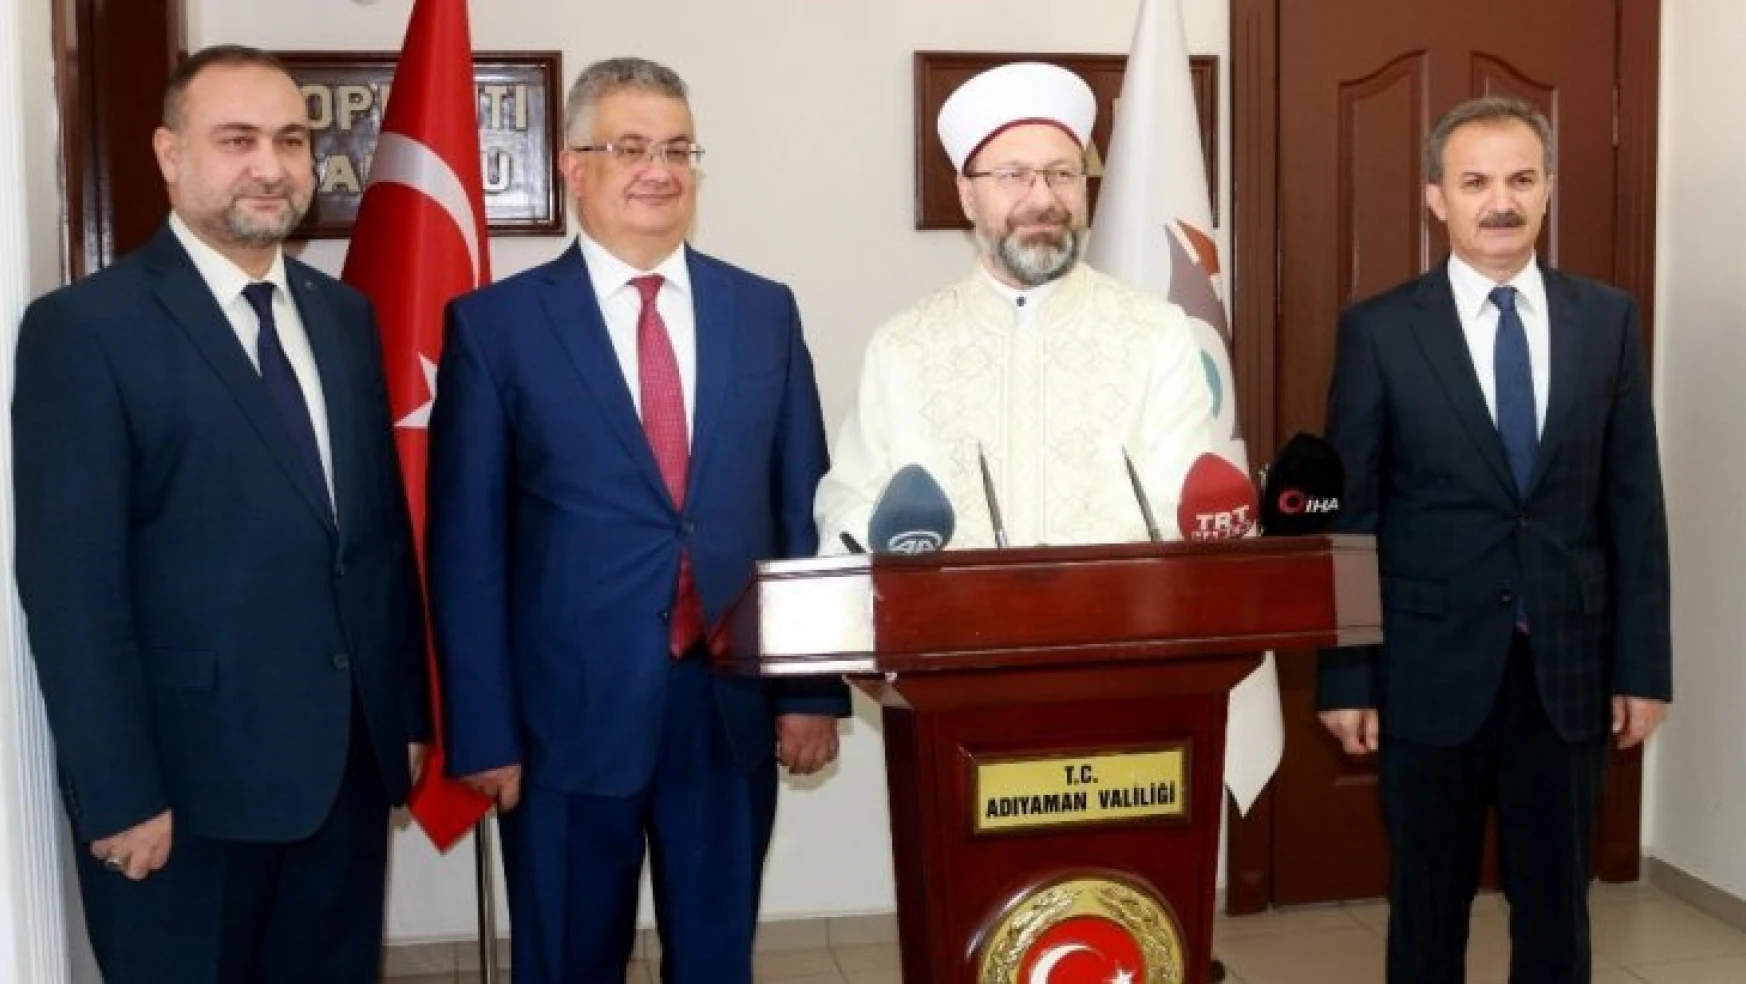 Diyanet İşleri Başkanı Prof. Dr. Ali Erbaş, Vali Aykut Pekmezle bir araya geldi